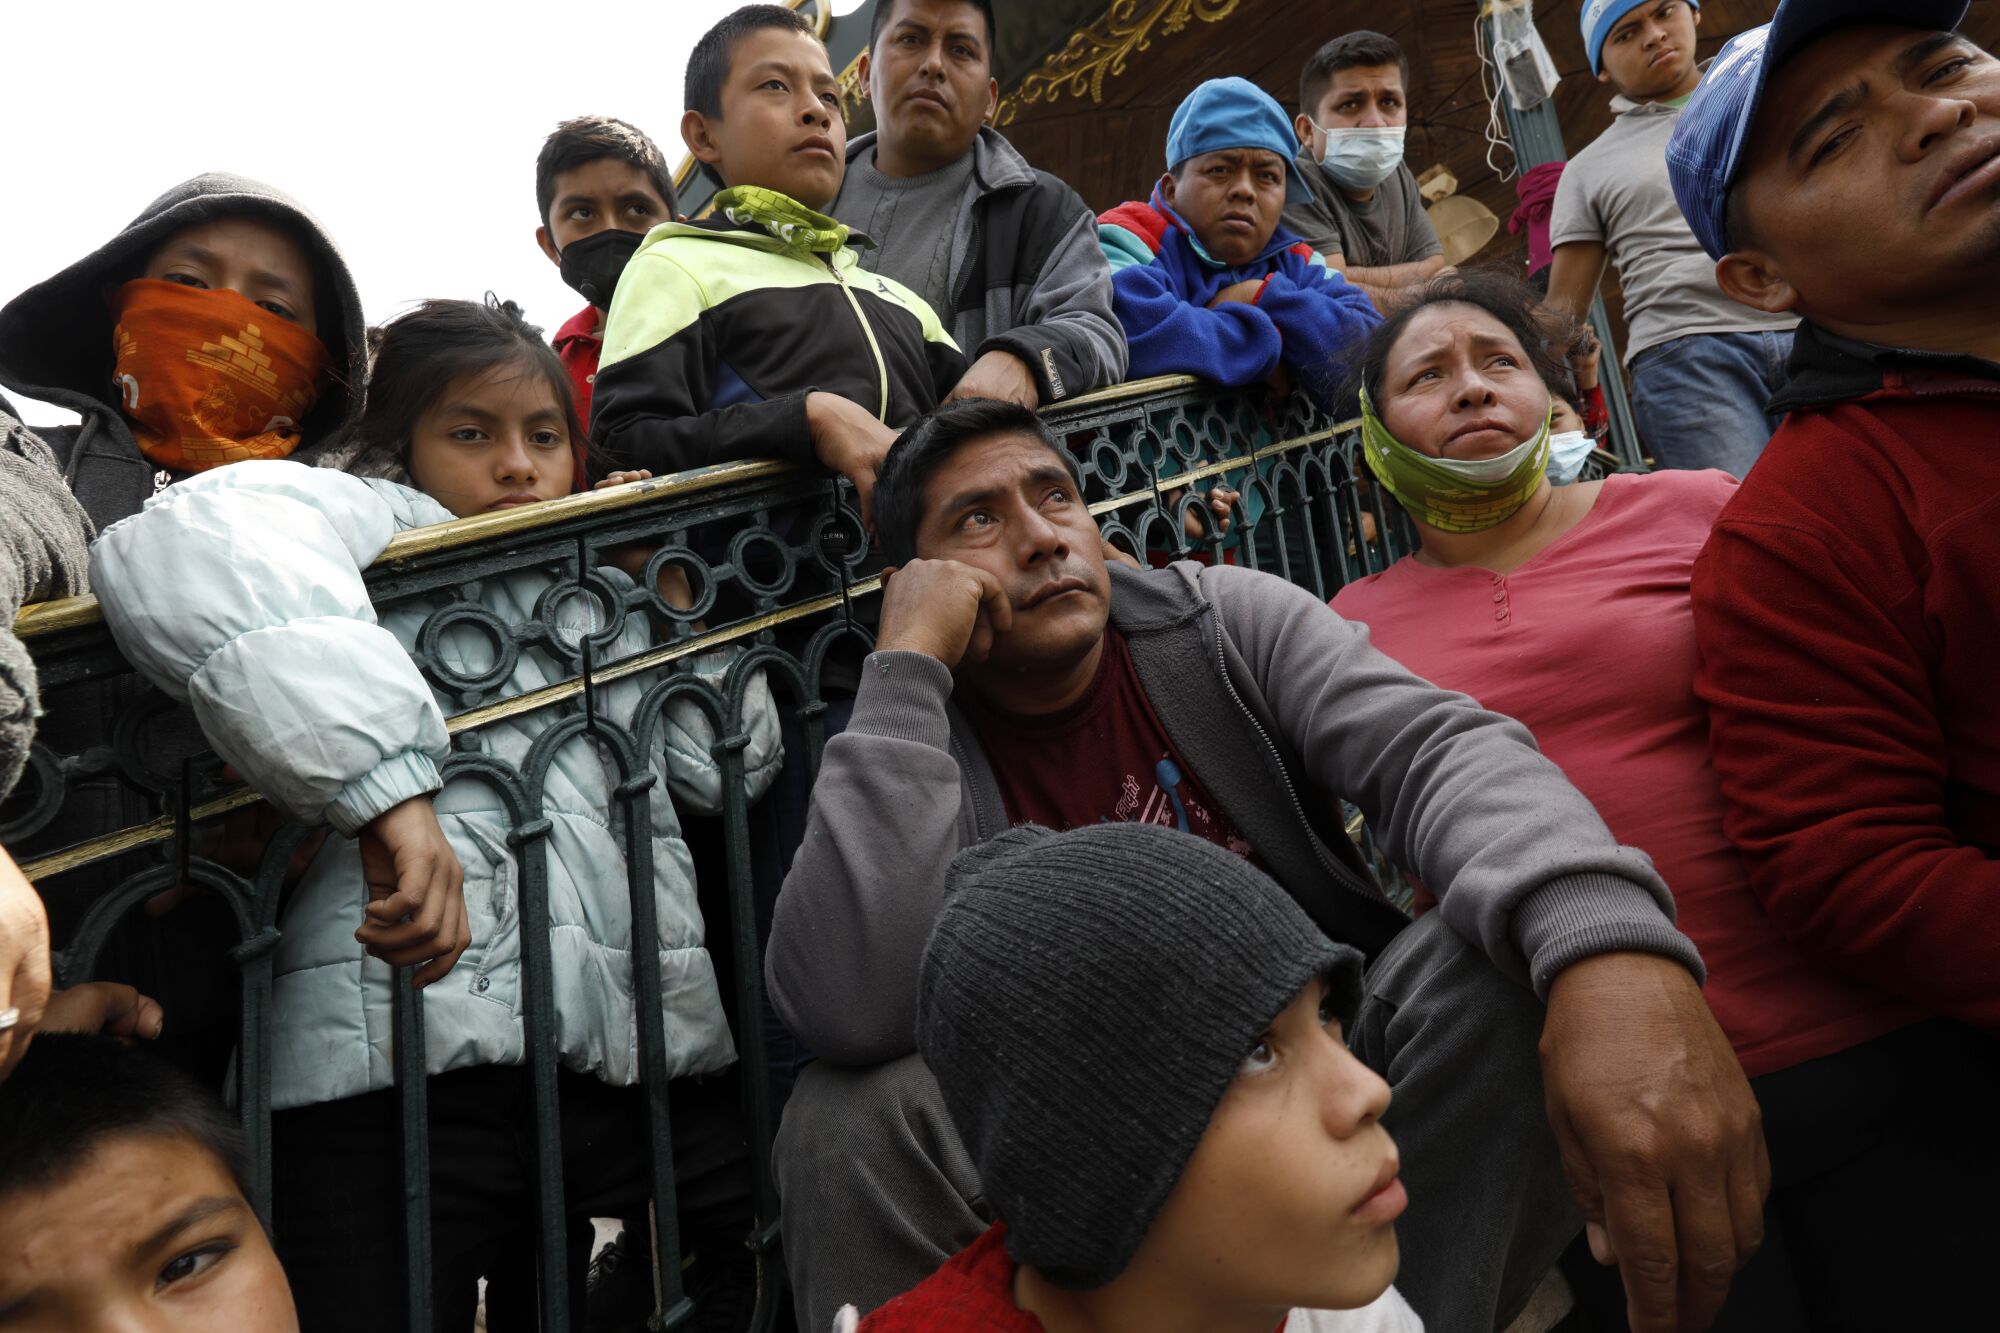 Men, women and children crowd around a railing.